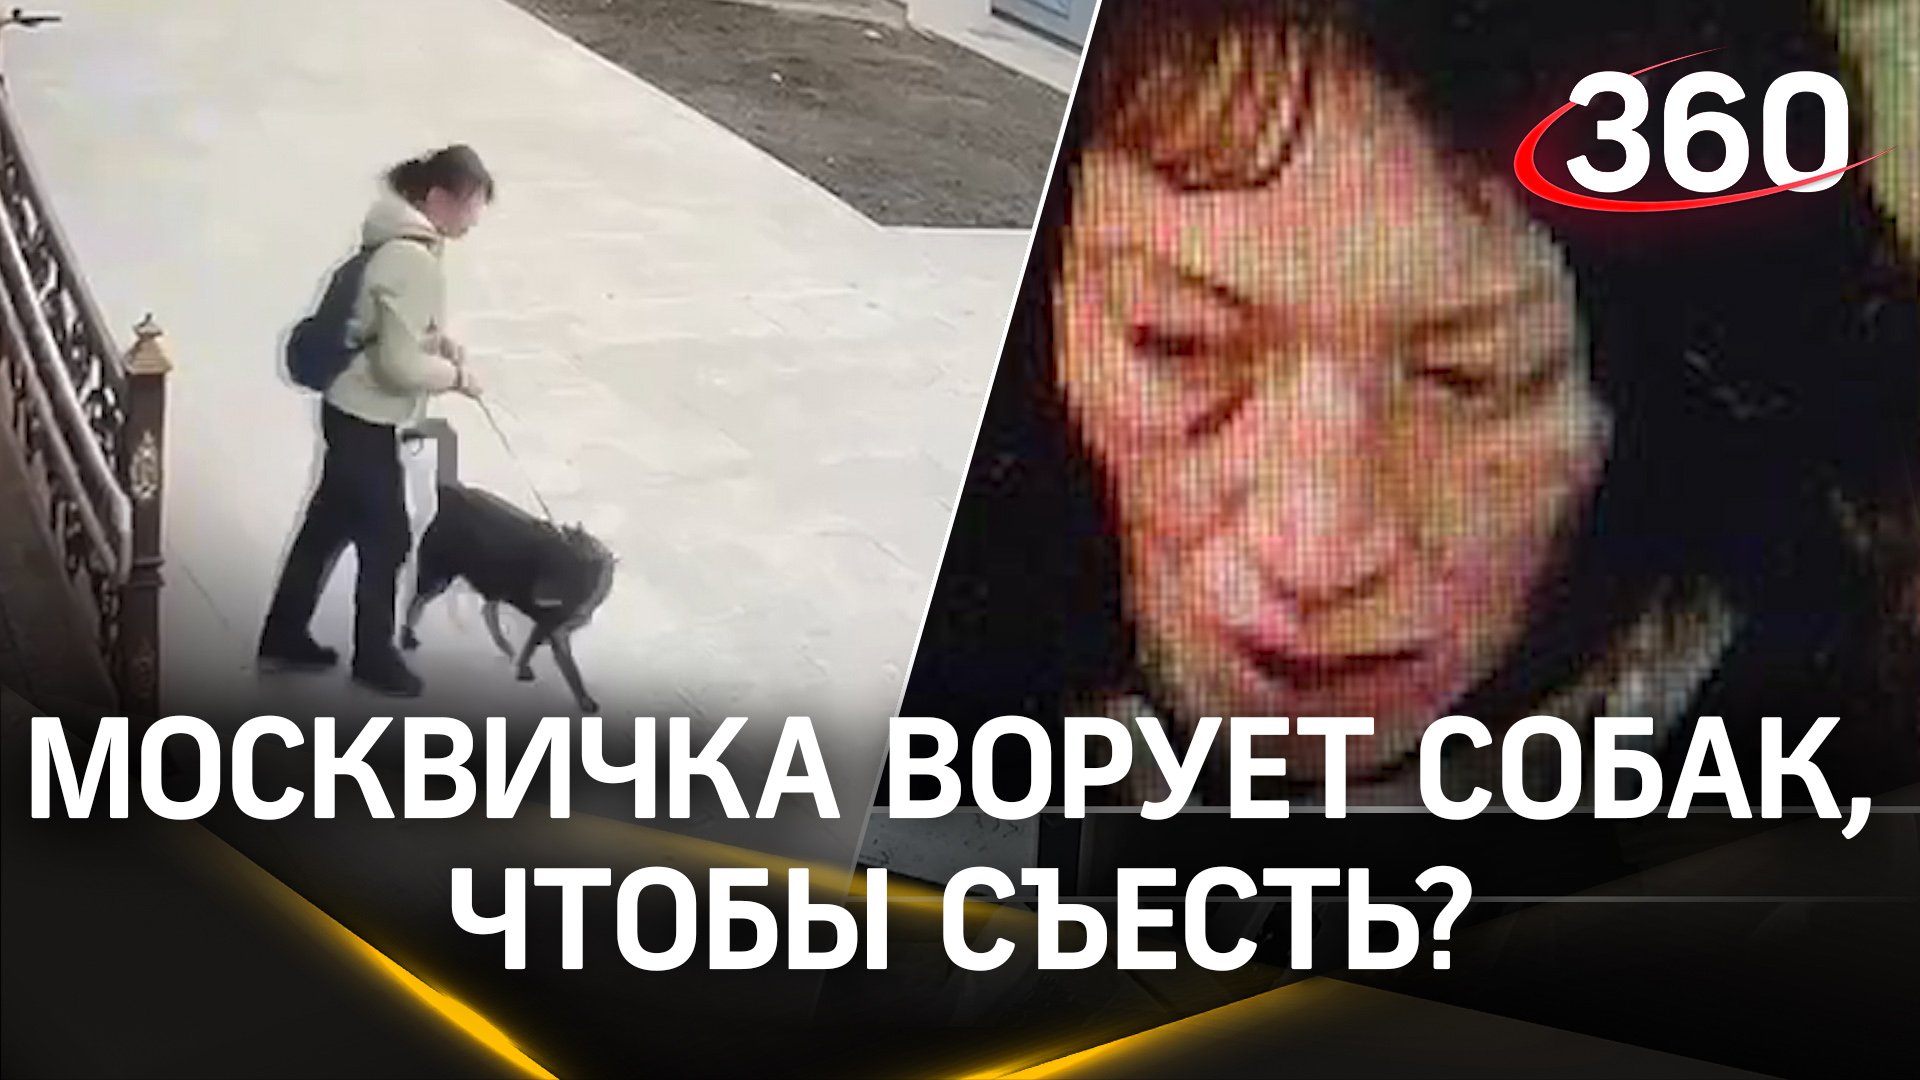 «Ворует собак, чтоб съесть»: москвичи подозревают соседку Танюху в краже животных ради употребления